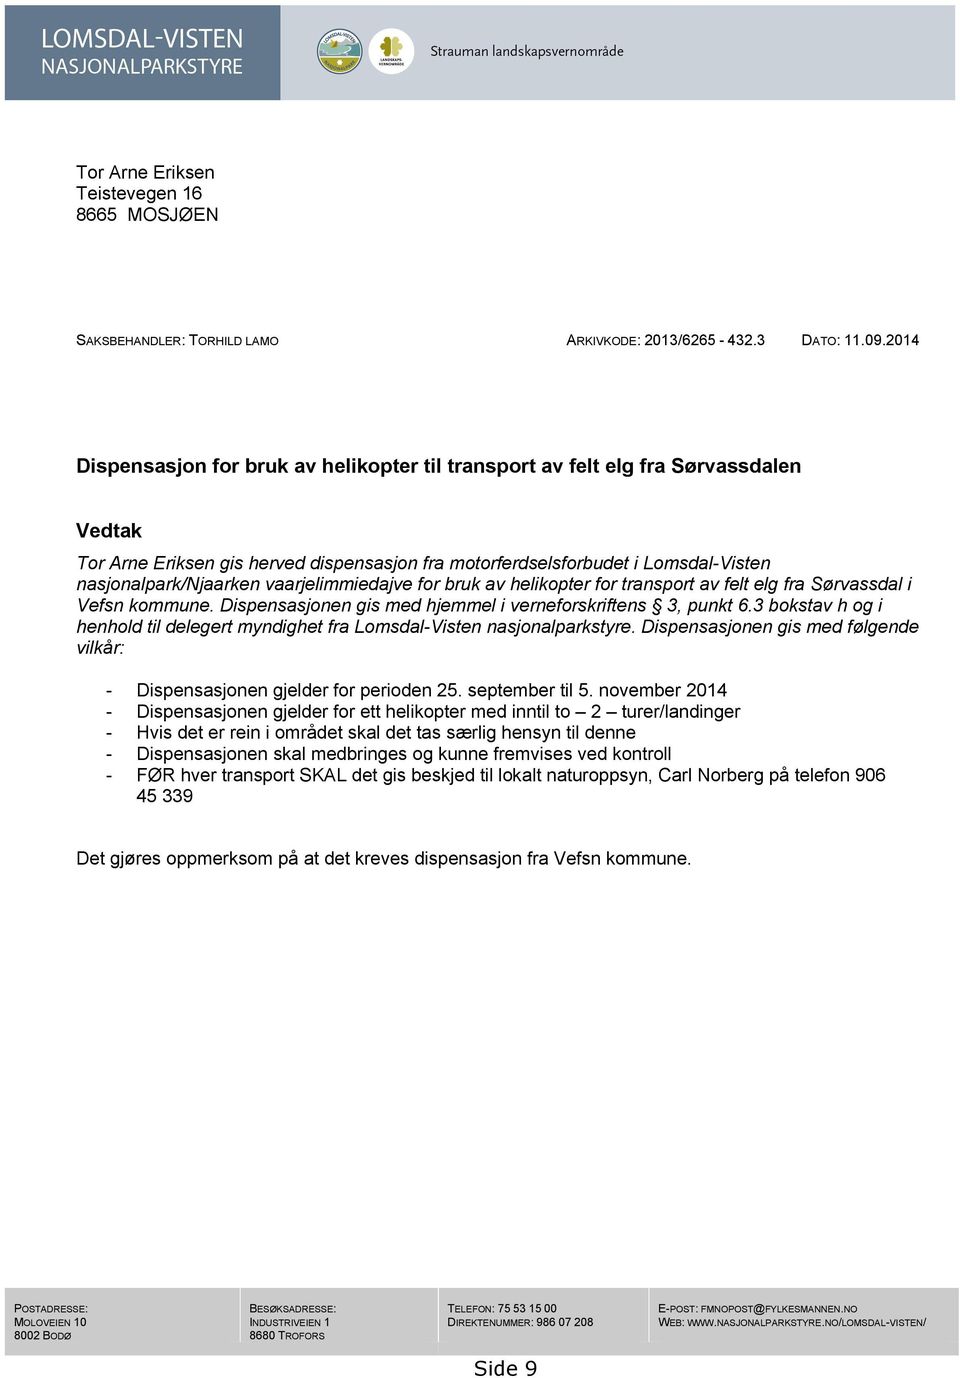 vaarjelimmiedajve for bruk av helikopter for transport av felt elg fra Sørvassdal i Vefsn kommune. Dispensasjonen gis med hjemmel i verneforskriftens 3, punkt 6.